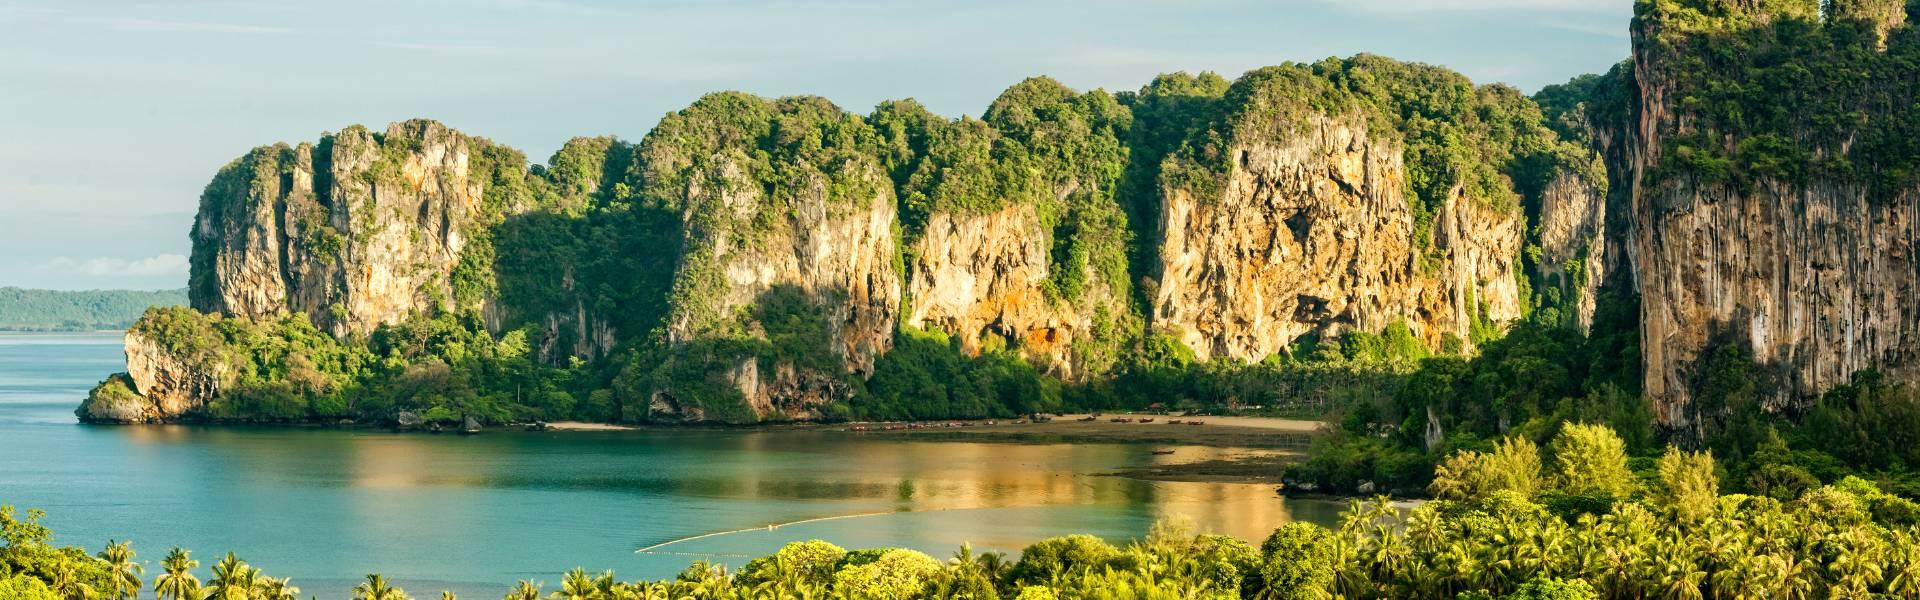 Guide de voyage de Krabi | Voyage en Thaïlande avec Asiatica Travel